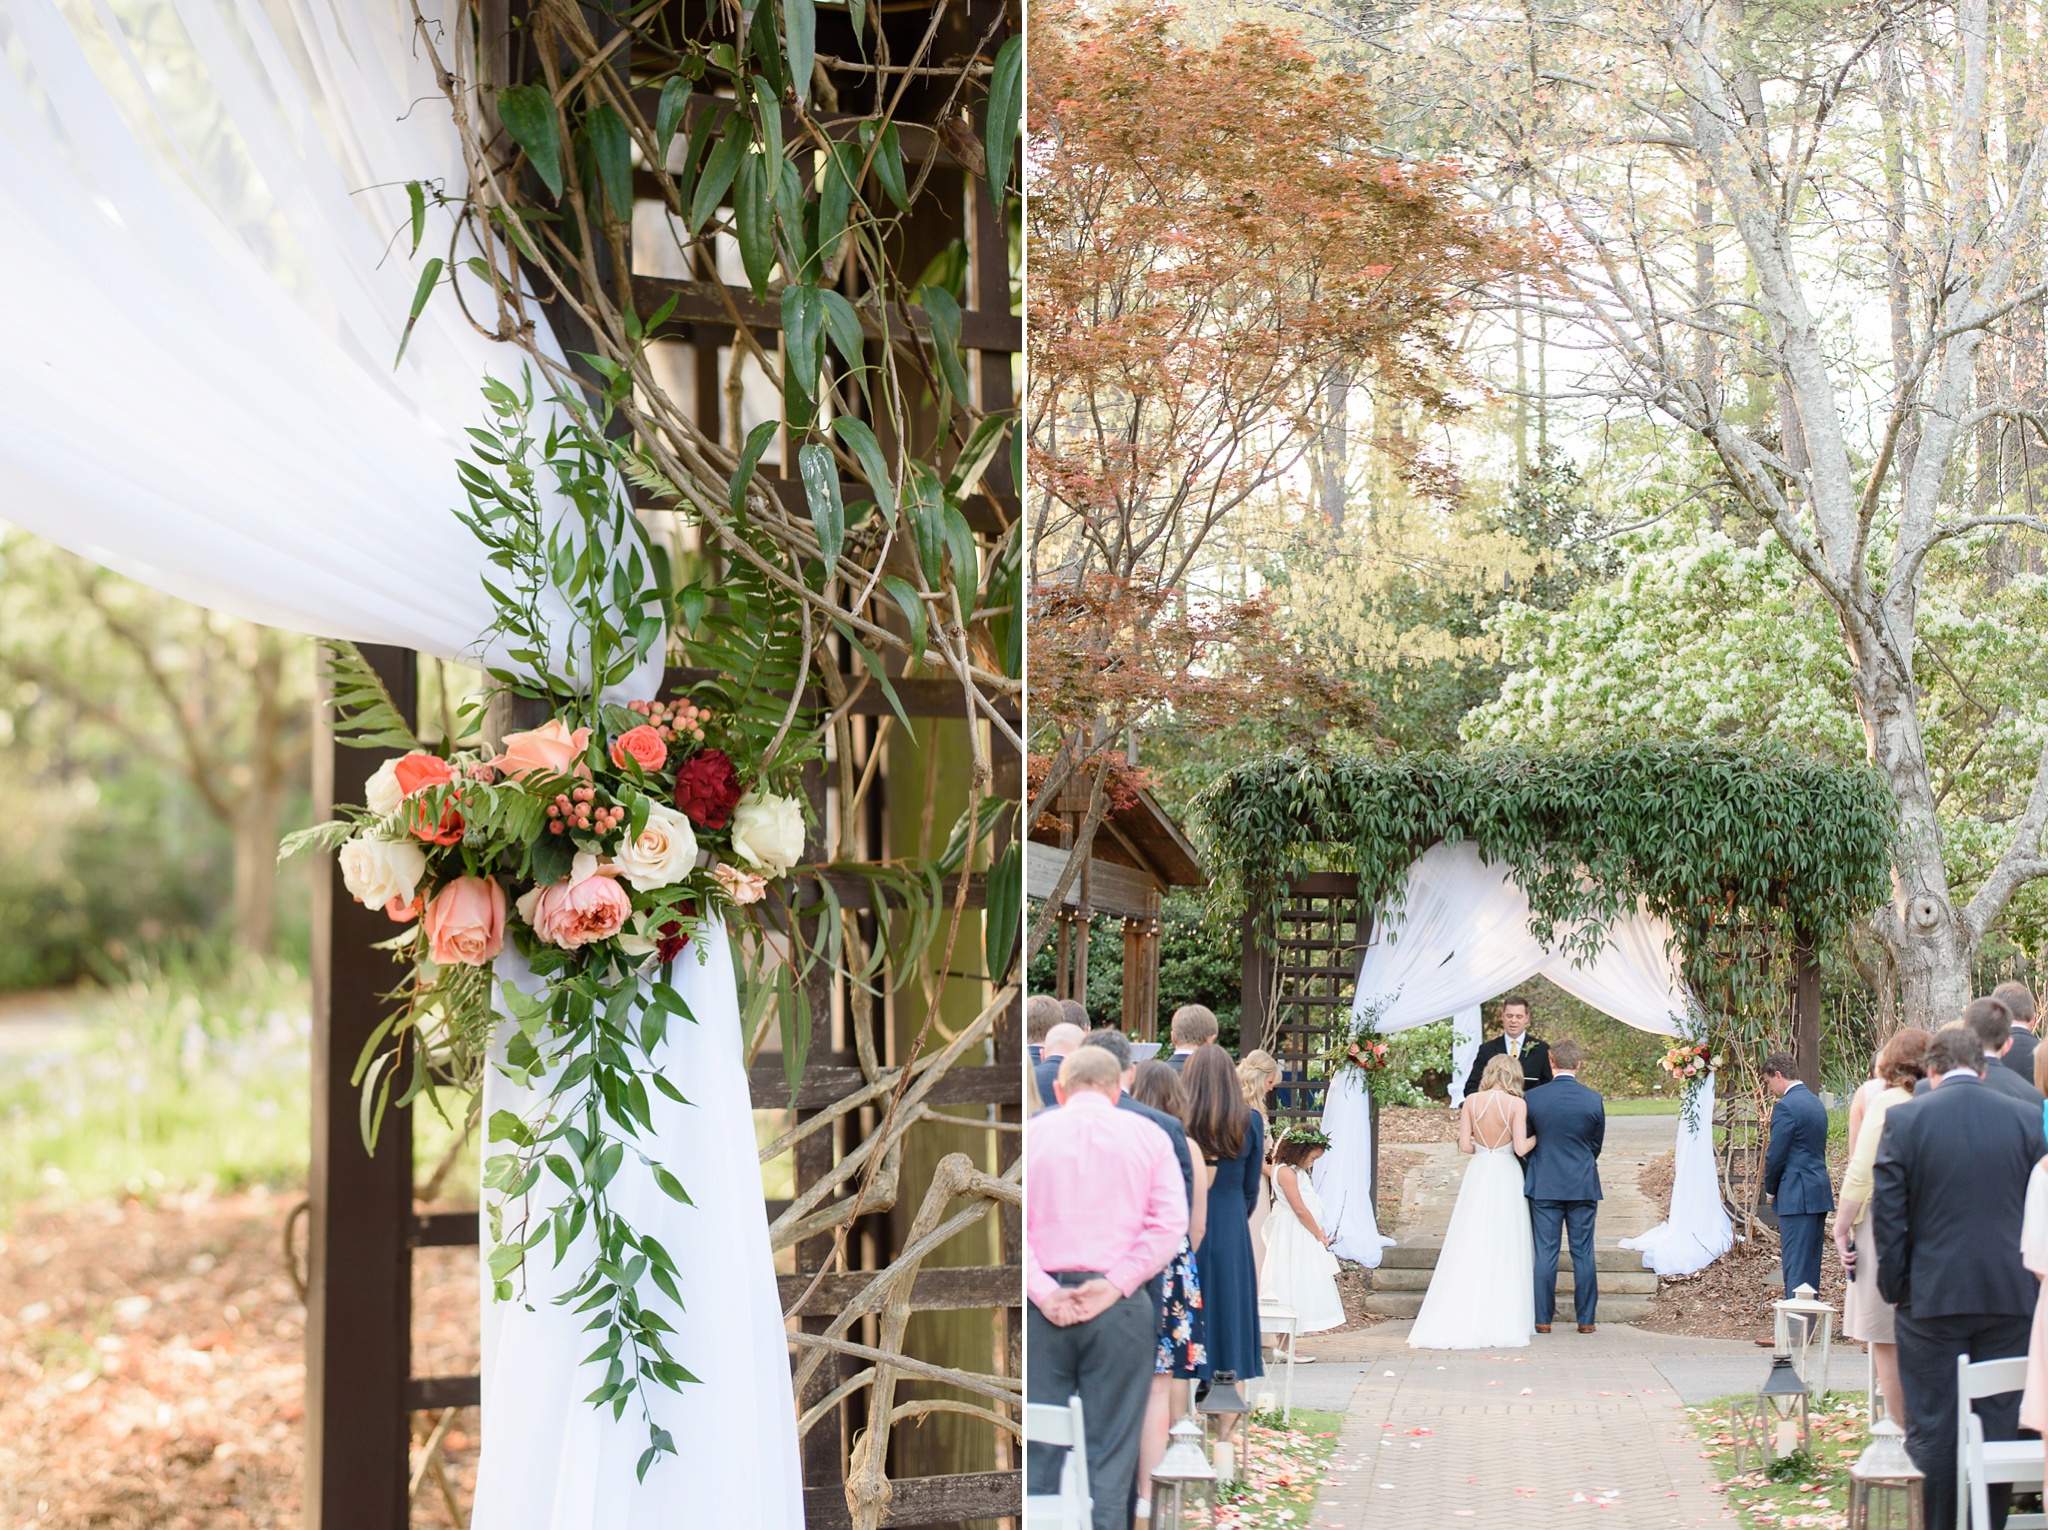 Aldridge Gardens Spring Wedding | Birmingham Alabama Wedding Photographers_0090.jpg